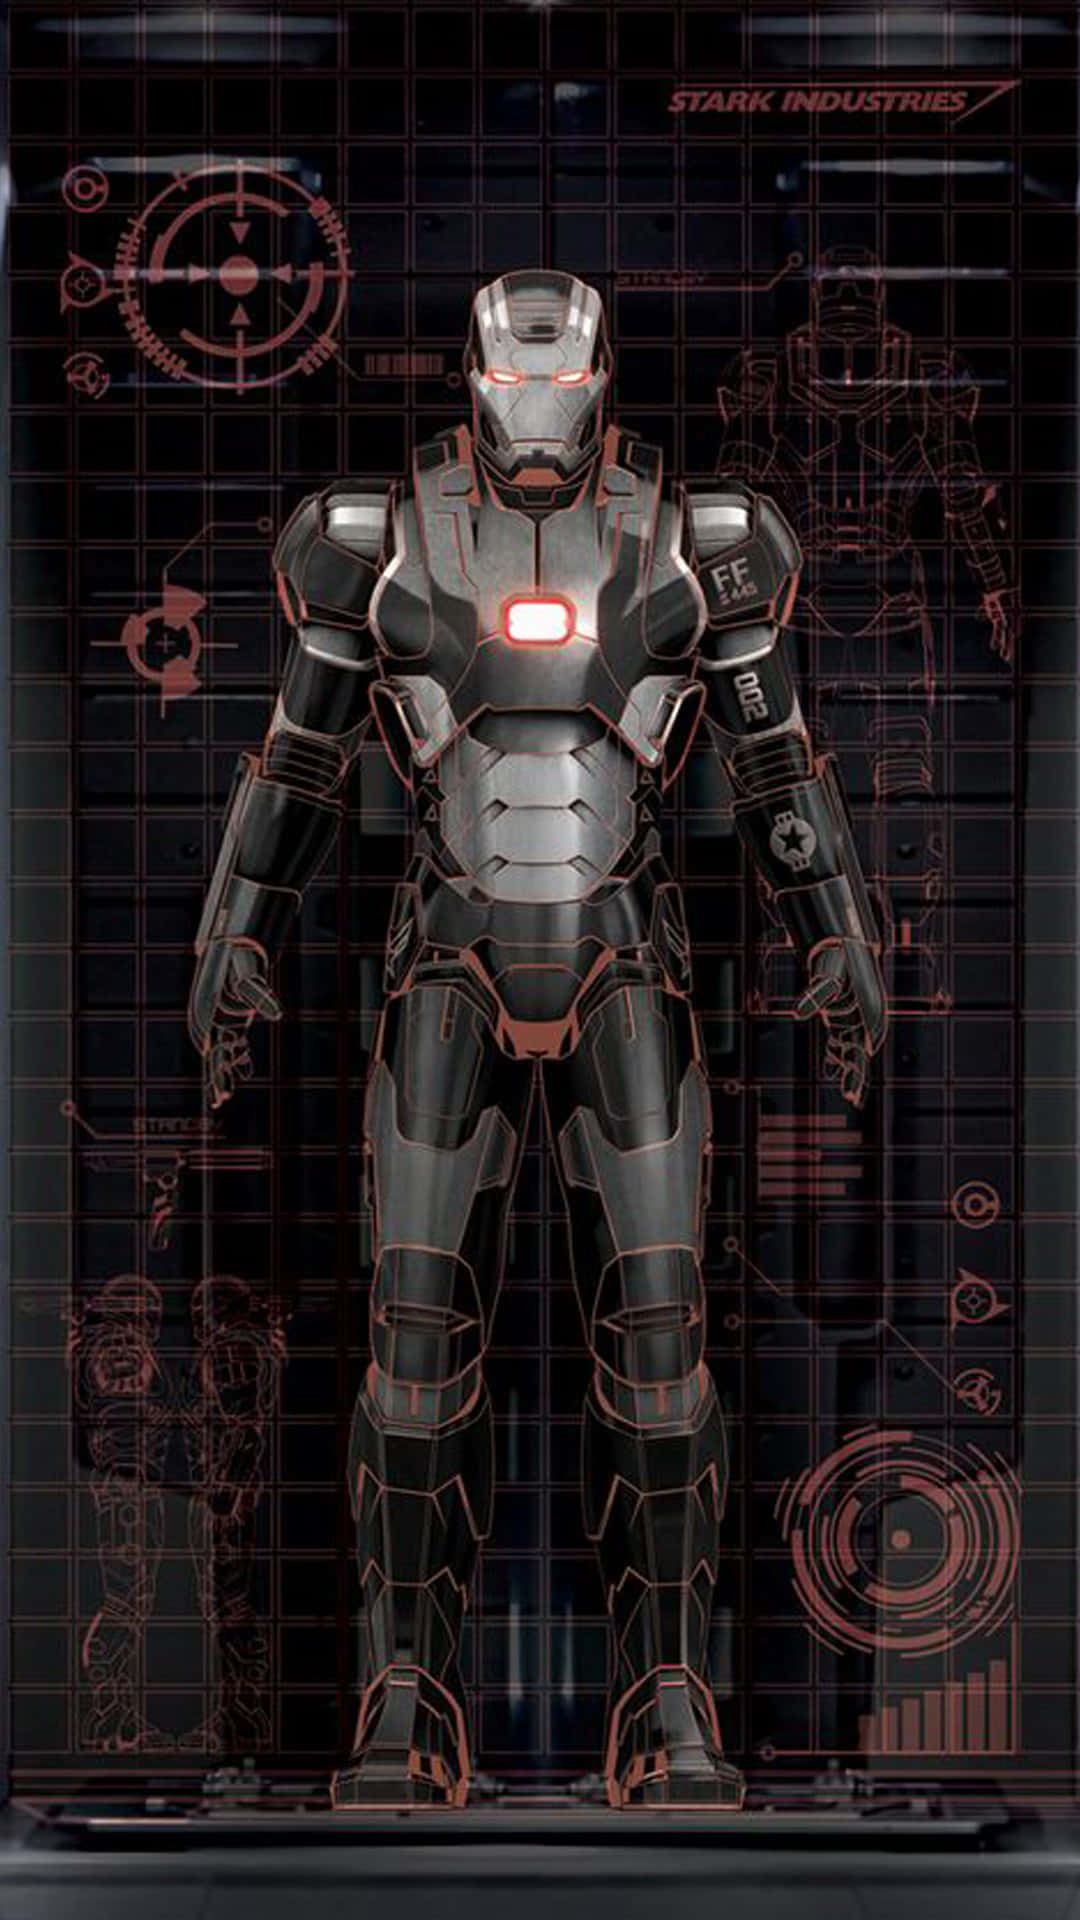 Ironman 3 - Avengers - Screenshot (in German: Iron Man 3 - Avengers - Bildschirmaufnahme) Wallpaper